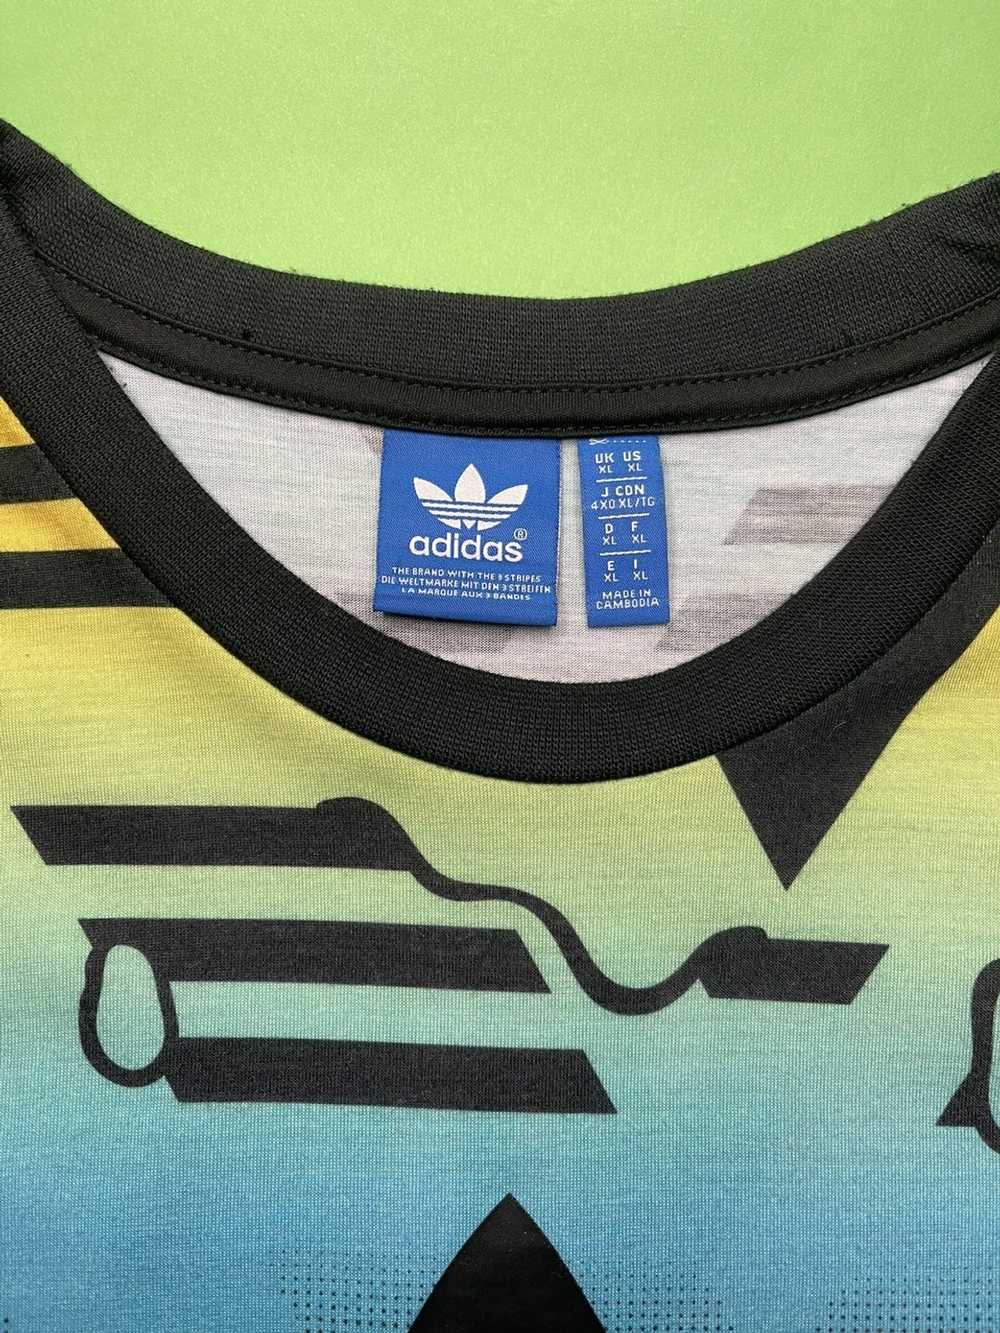 Adidas Adidas multi colored drip printed tee. - image 5